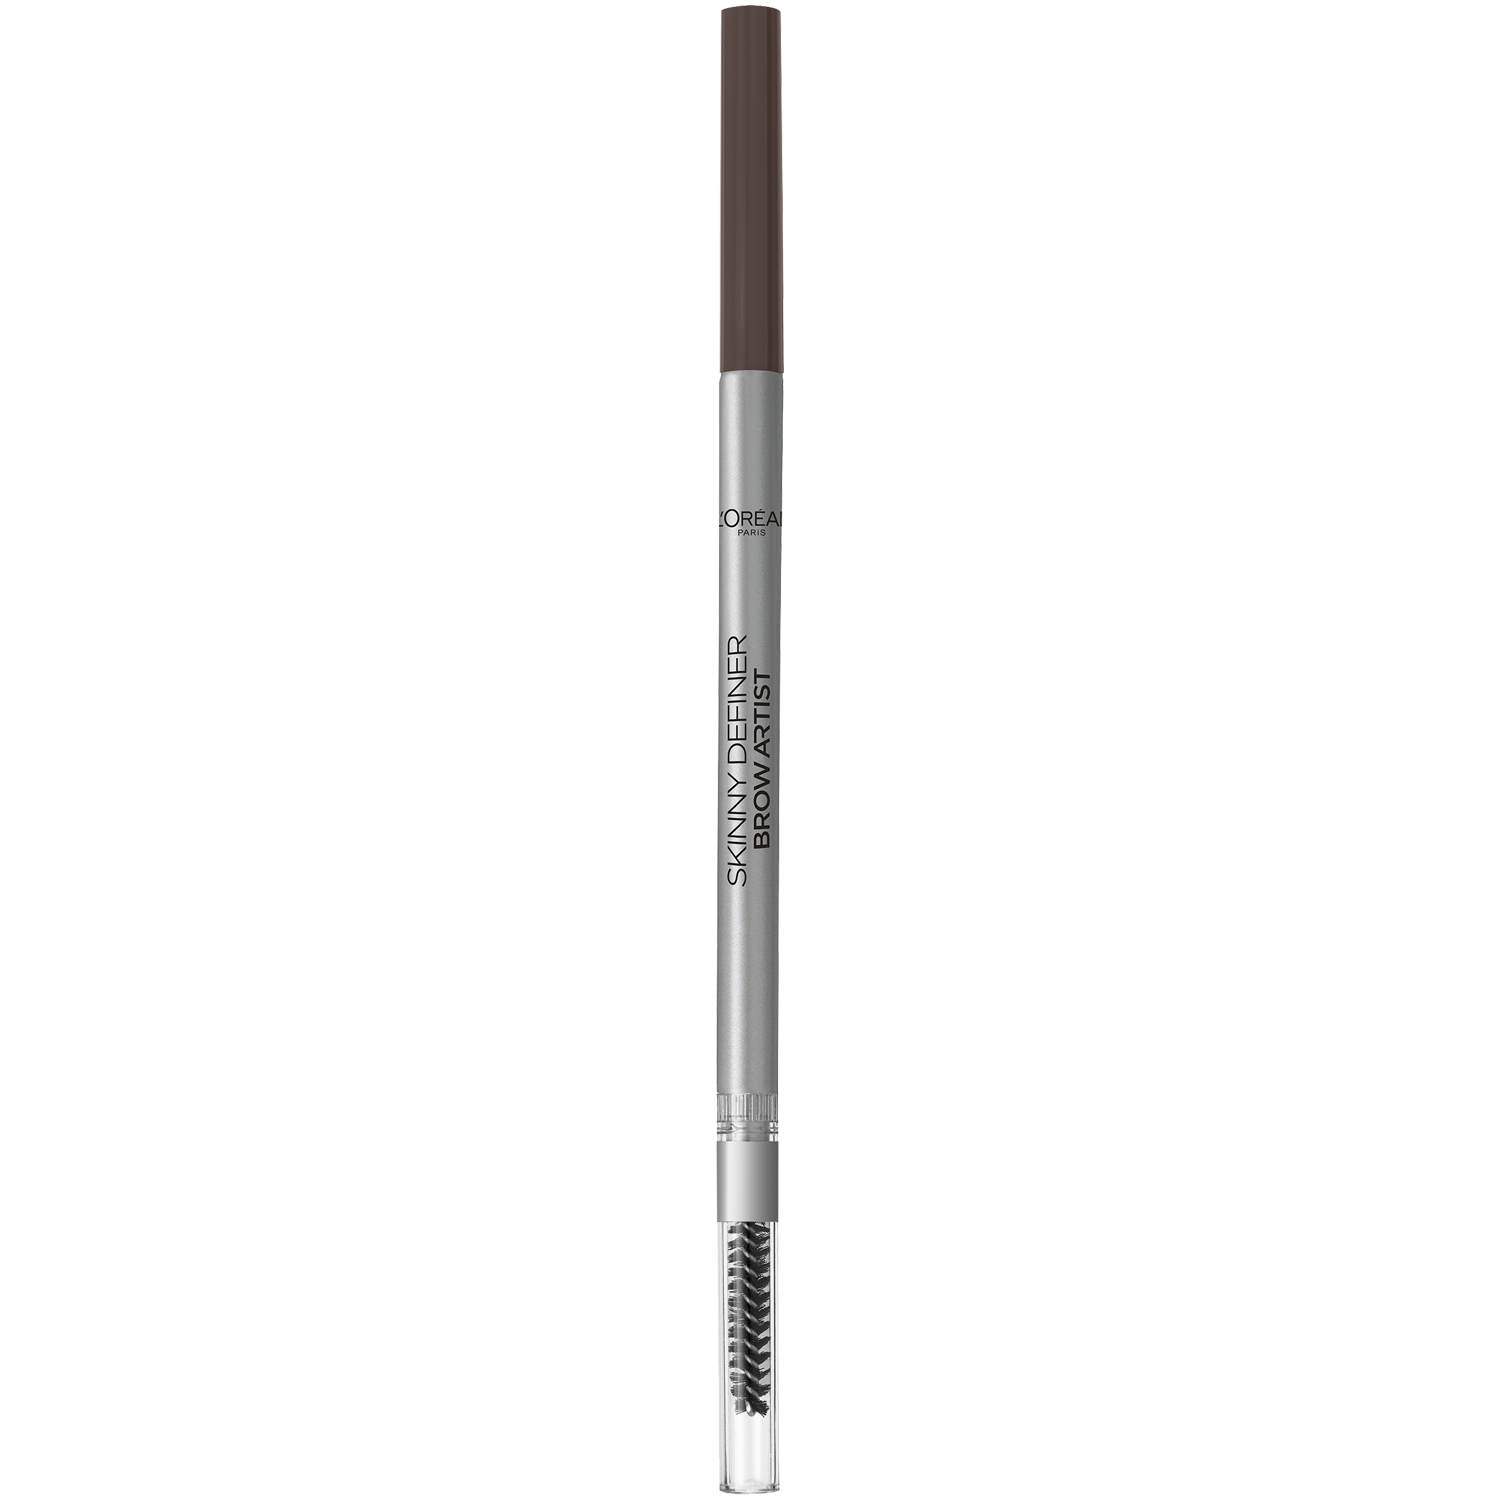 Карандаш для бровей теплый брюнетка 108 L'Oréal Paris Brow Artist Xpert, 1,2 гр карандаш для бровей brow artist xpert l oreal paris 102 холодный блонд